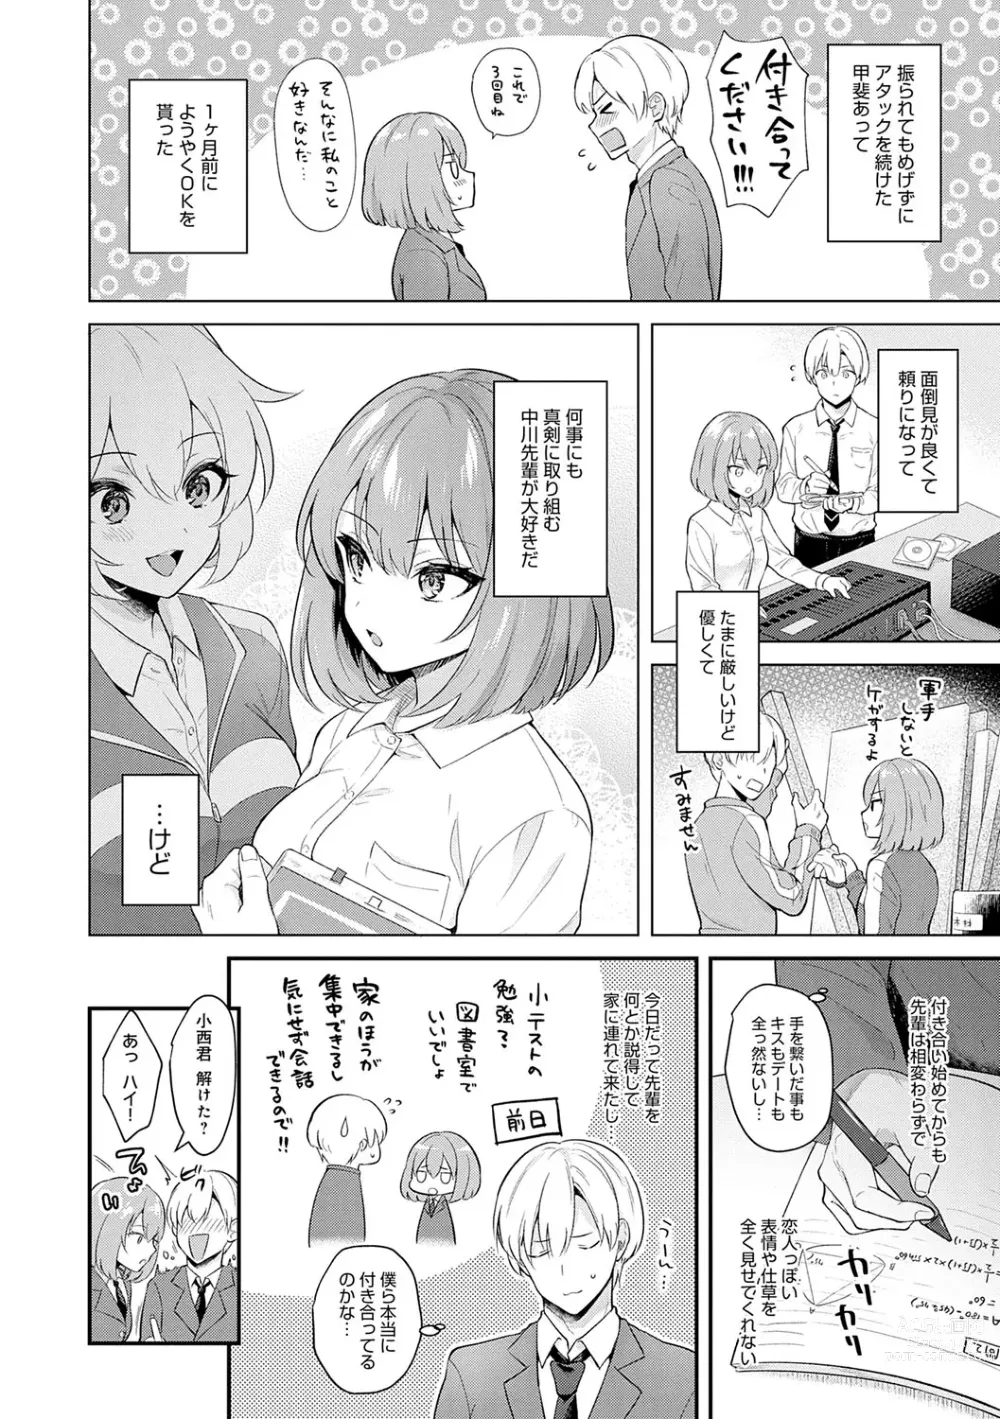 Page 5 of manga Kanojo Face